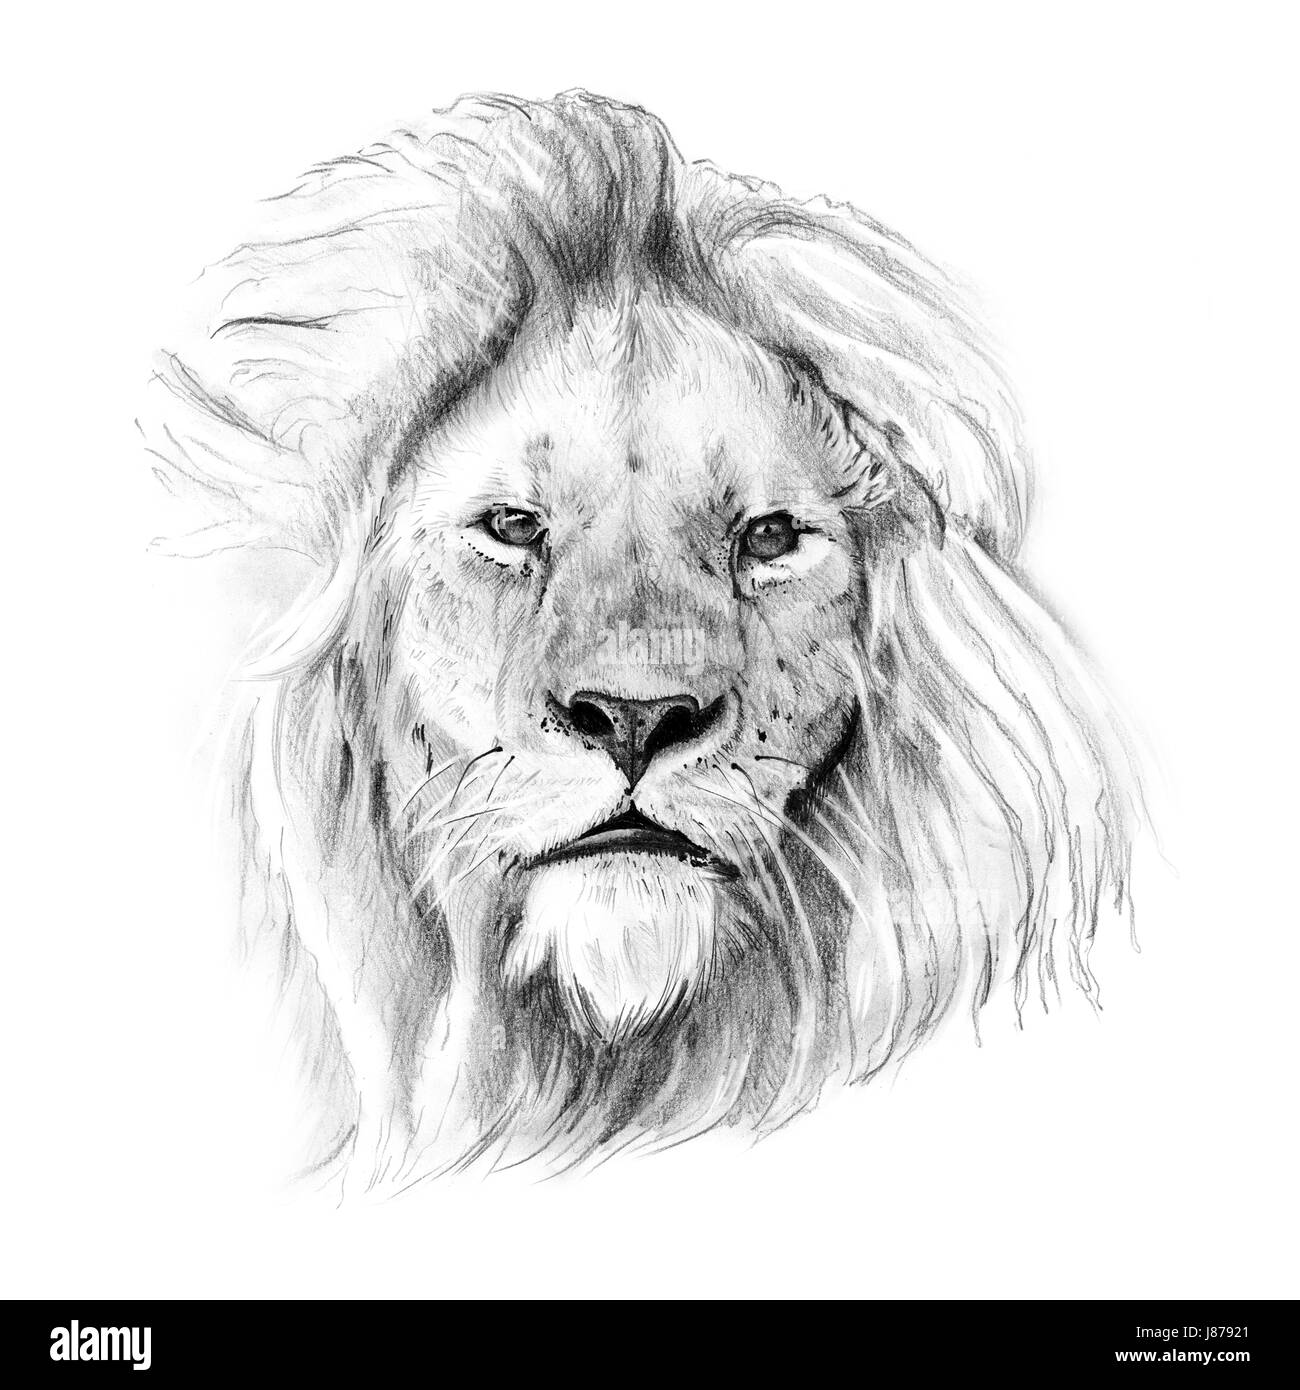 Lion disegnato immagini e fotografie stock ad alta risoluzione - Alamy